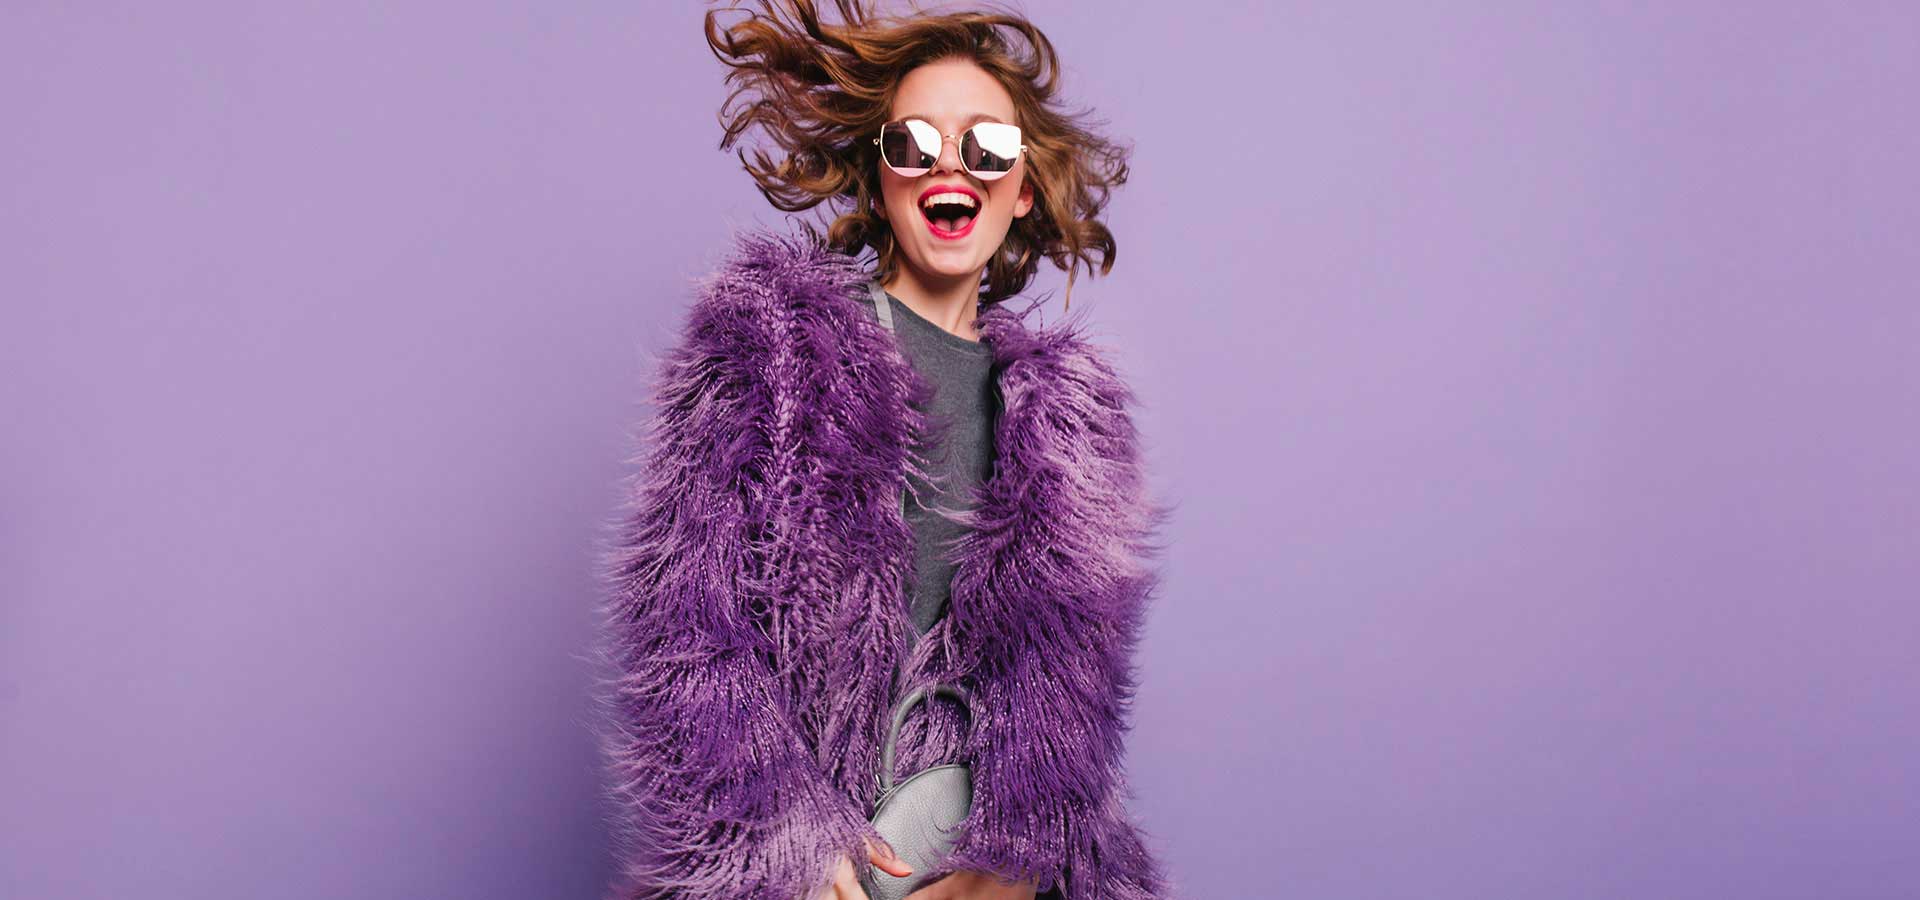 Geven Soms vrije tijd Color splash! Breng meer violet in je look en make-up | Zin in meer